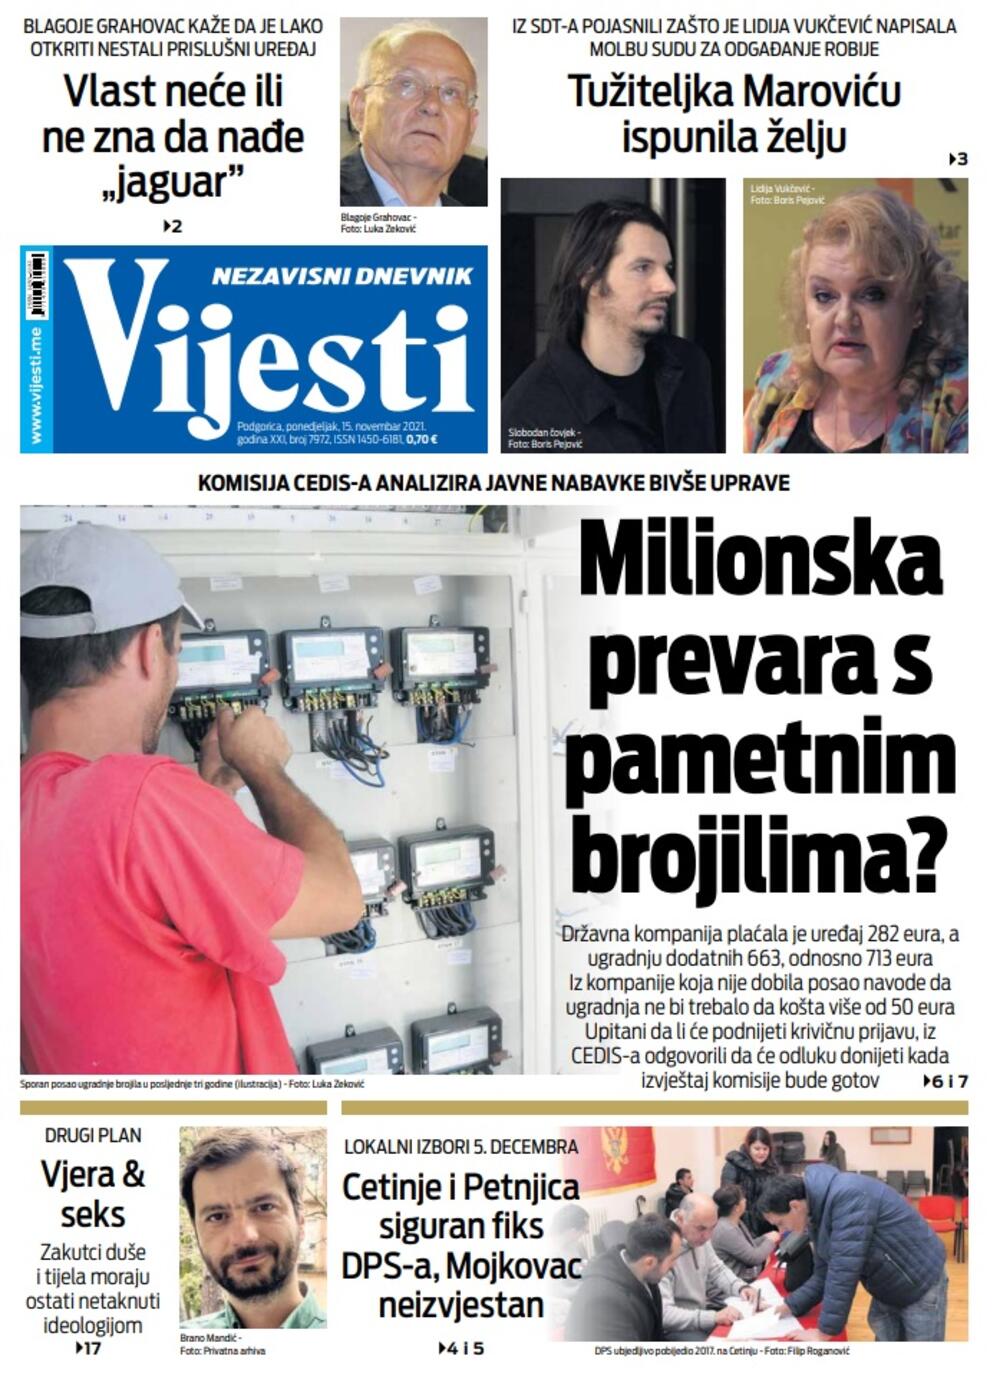 Naslovna strana "Vijesti" za ponedjeljak 15. novembar 2021. godine, Foto: Vijesti